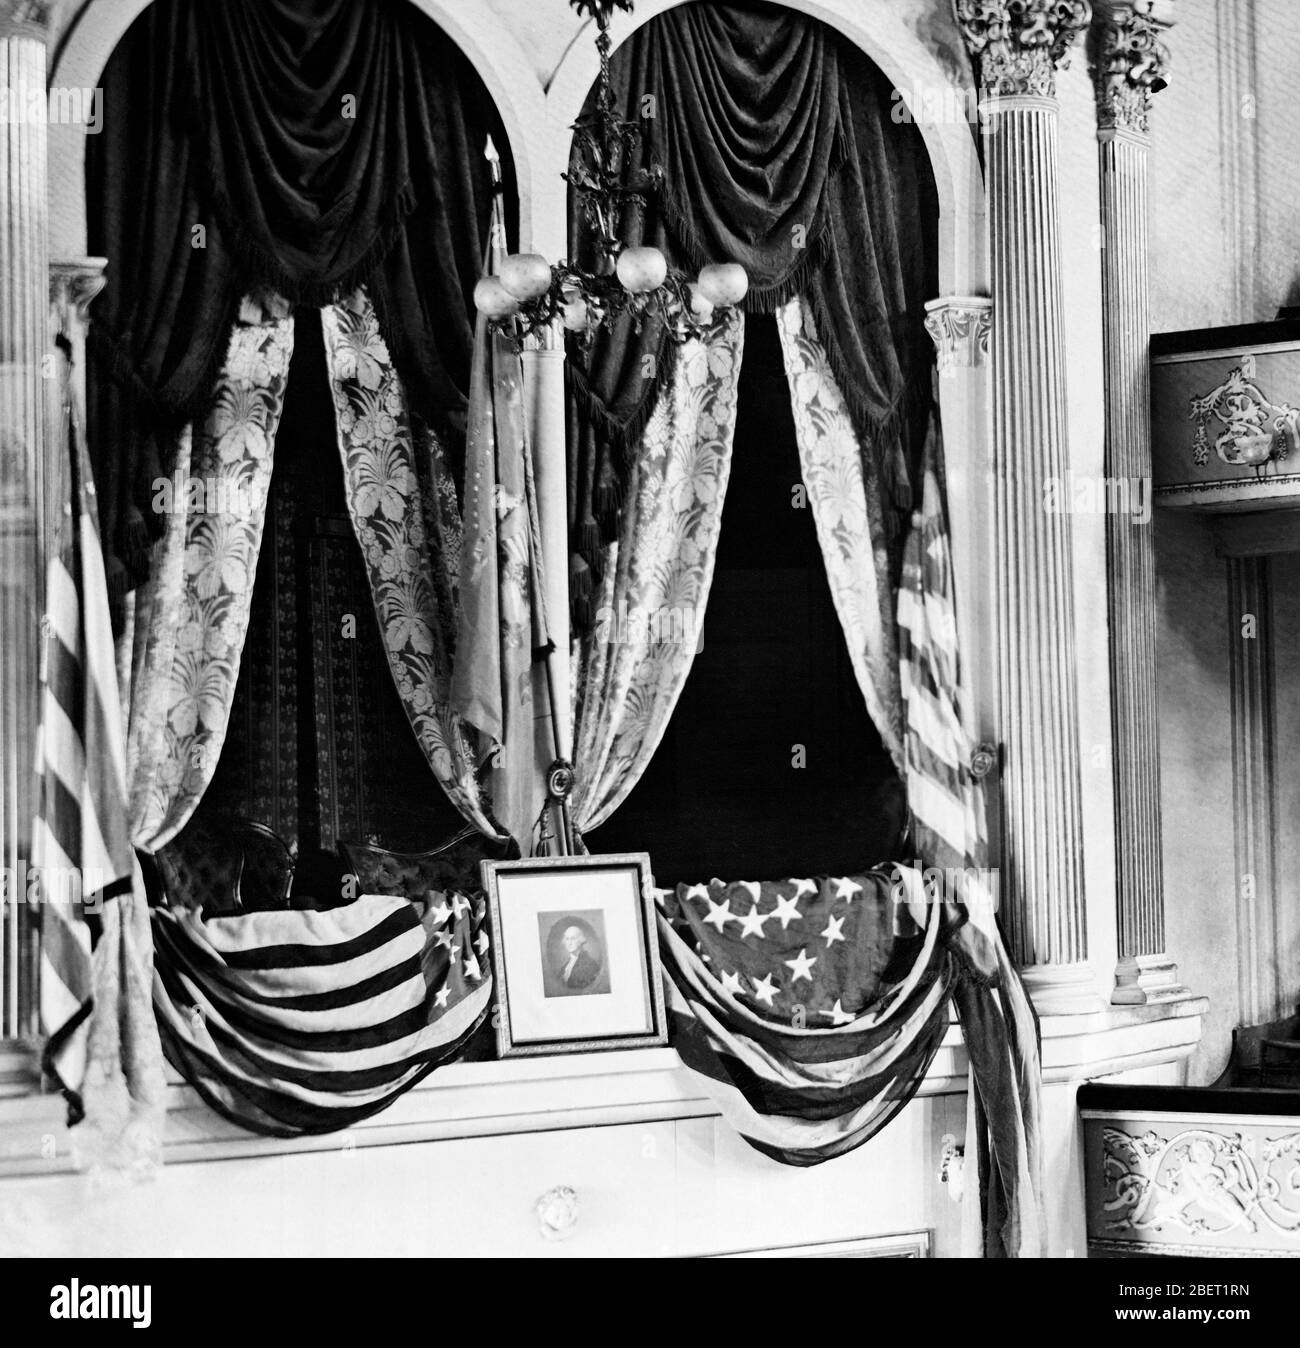 La boîte au Ford's Theatre où le président Abraham Lincoln a été assassiné. Banque D'Images